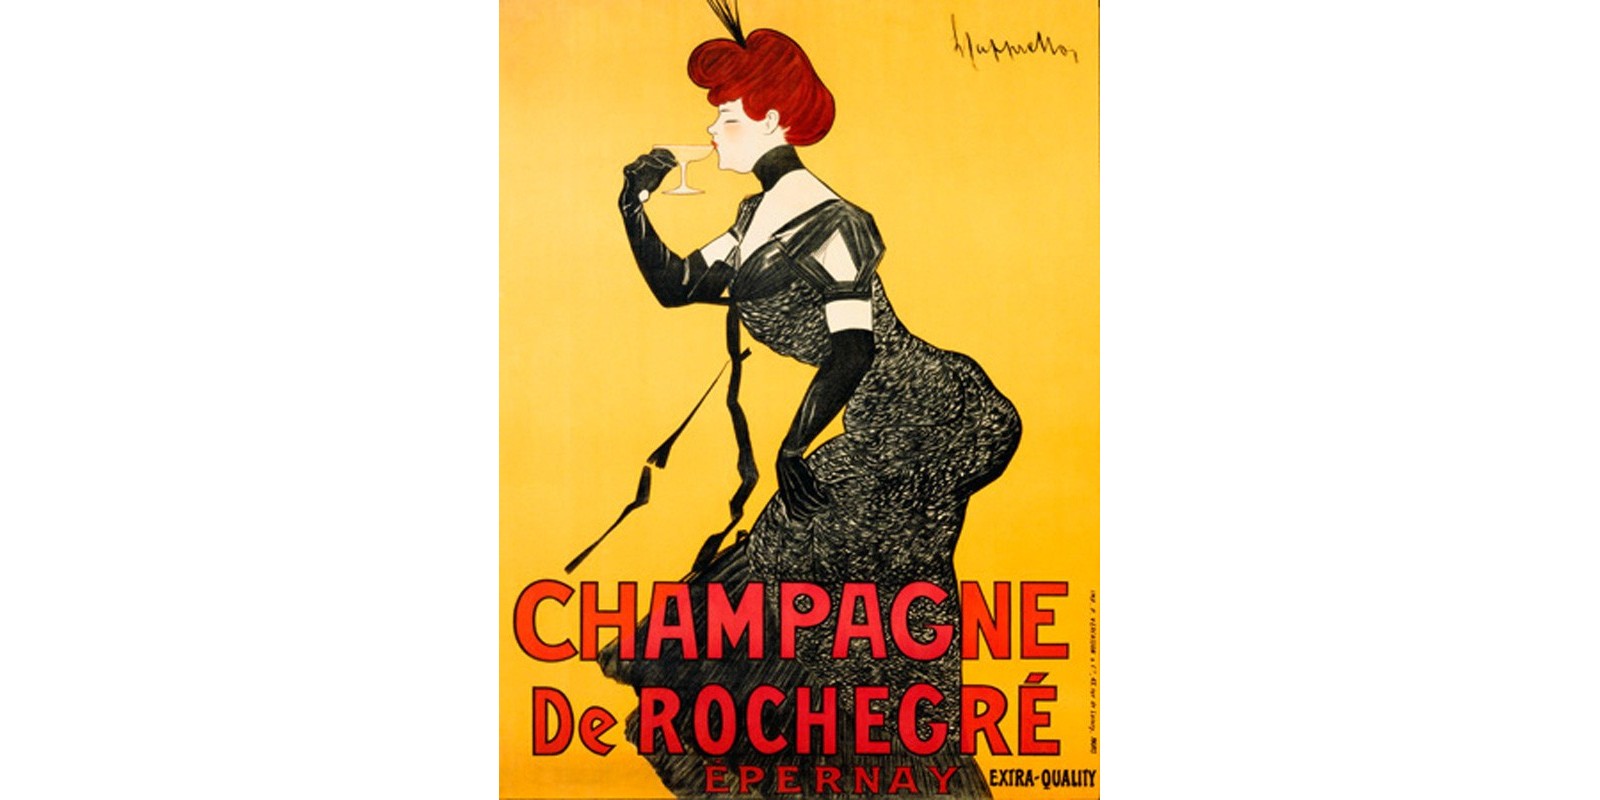 Leonetto Cappiello - Champagne de Rochegré, ca. 1902